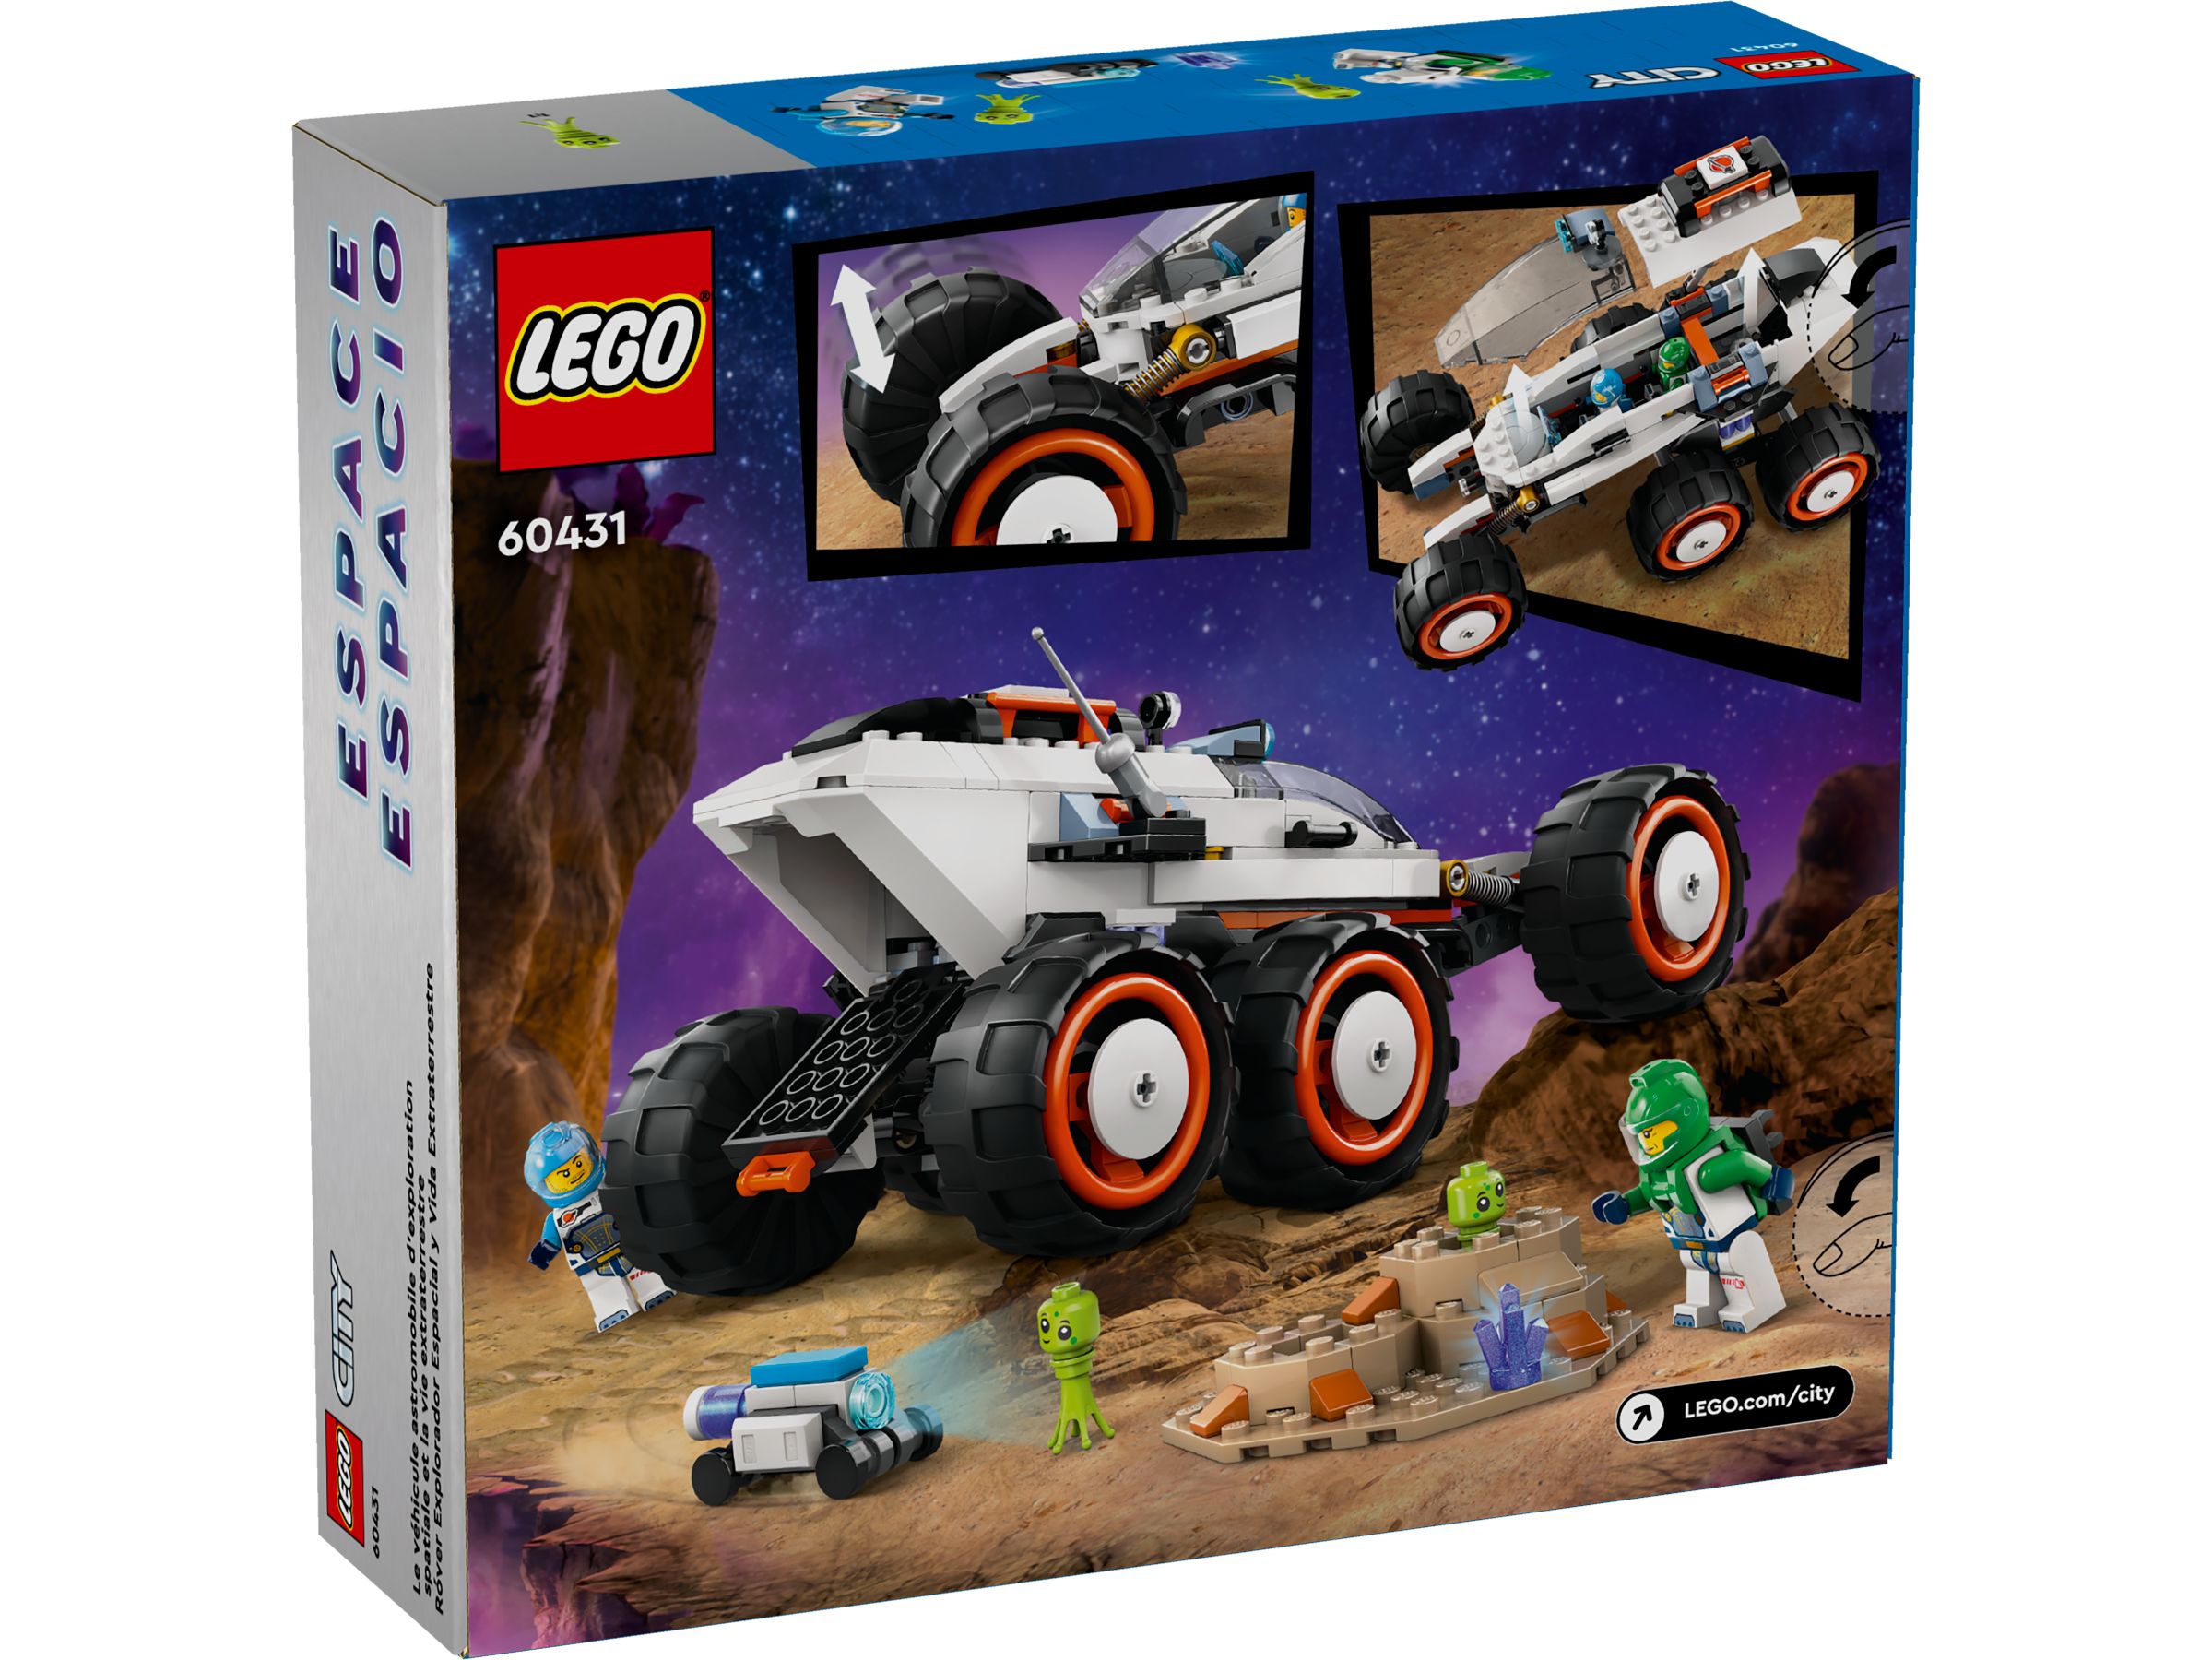 LEGO City 60431 Weltraum-Rover mit Außerirdischen LEGO_60431_alt5.jpg